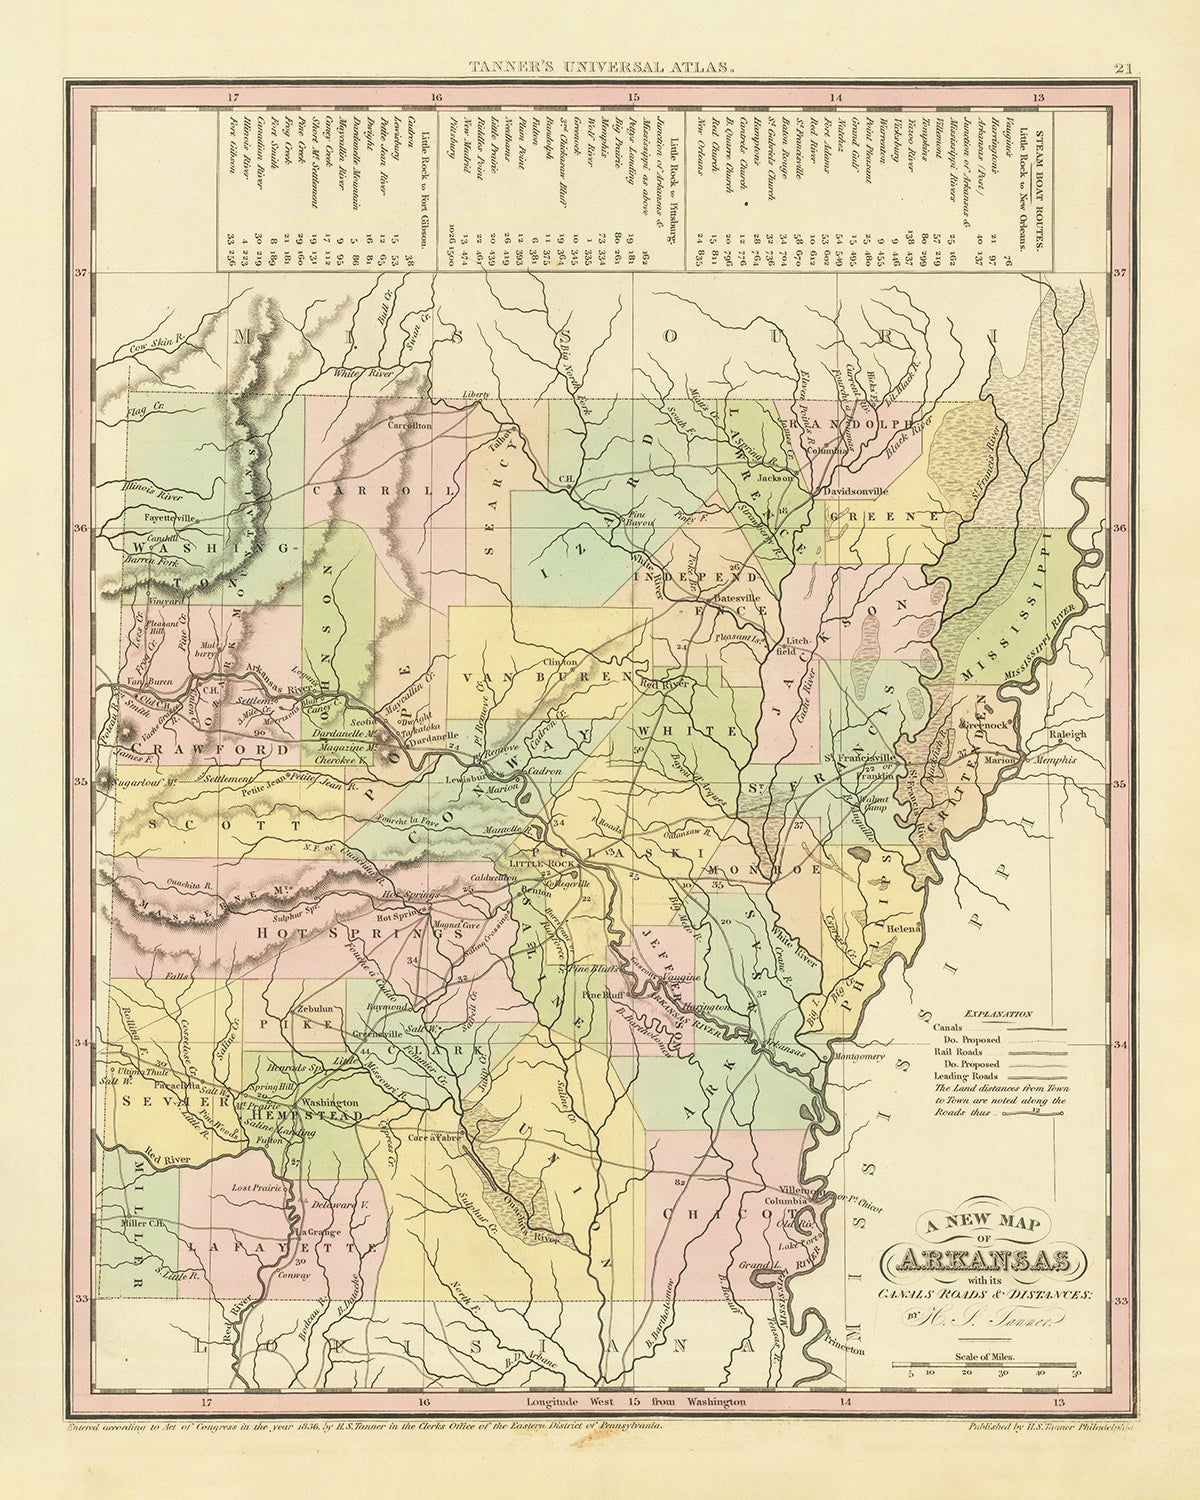 Alte Karte von Arkansas von H. S. Tanner, 1836: Little Rock, Fort Smith, Pine Bluff, Batesville, Washington, Straßen, Eisenbahn, Kanäle